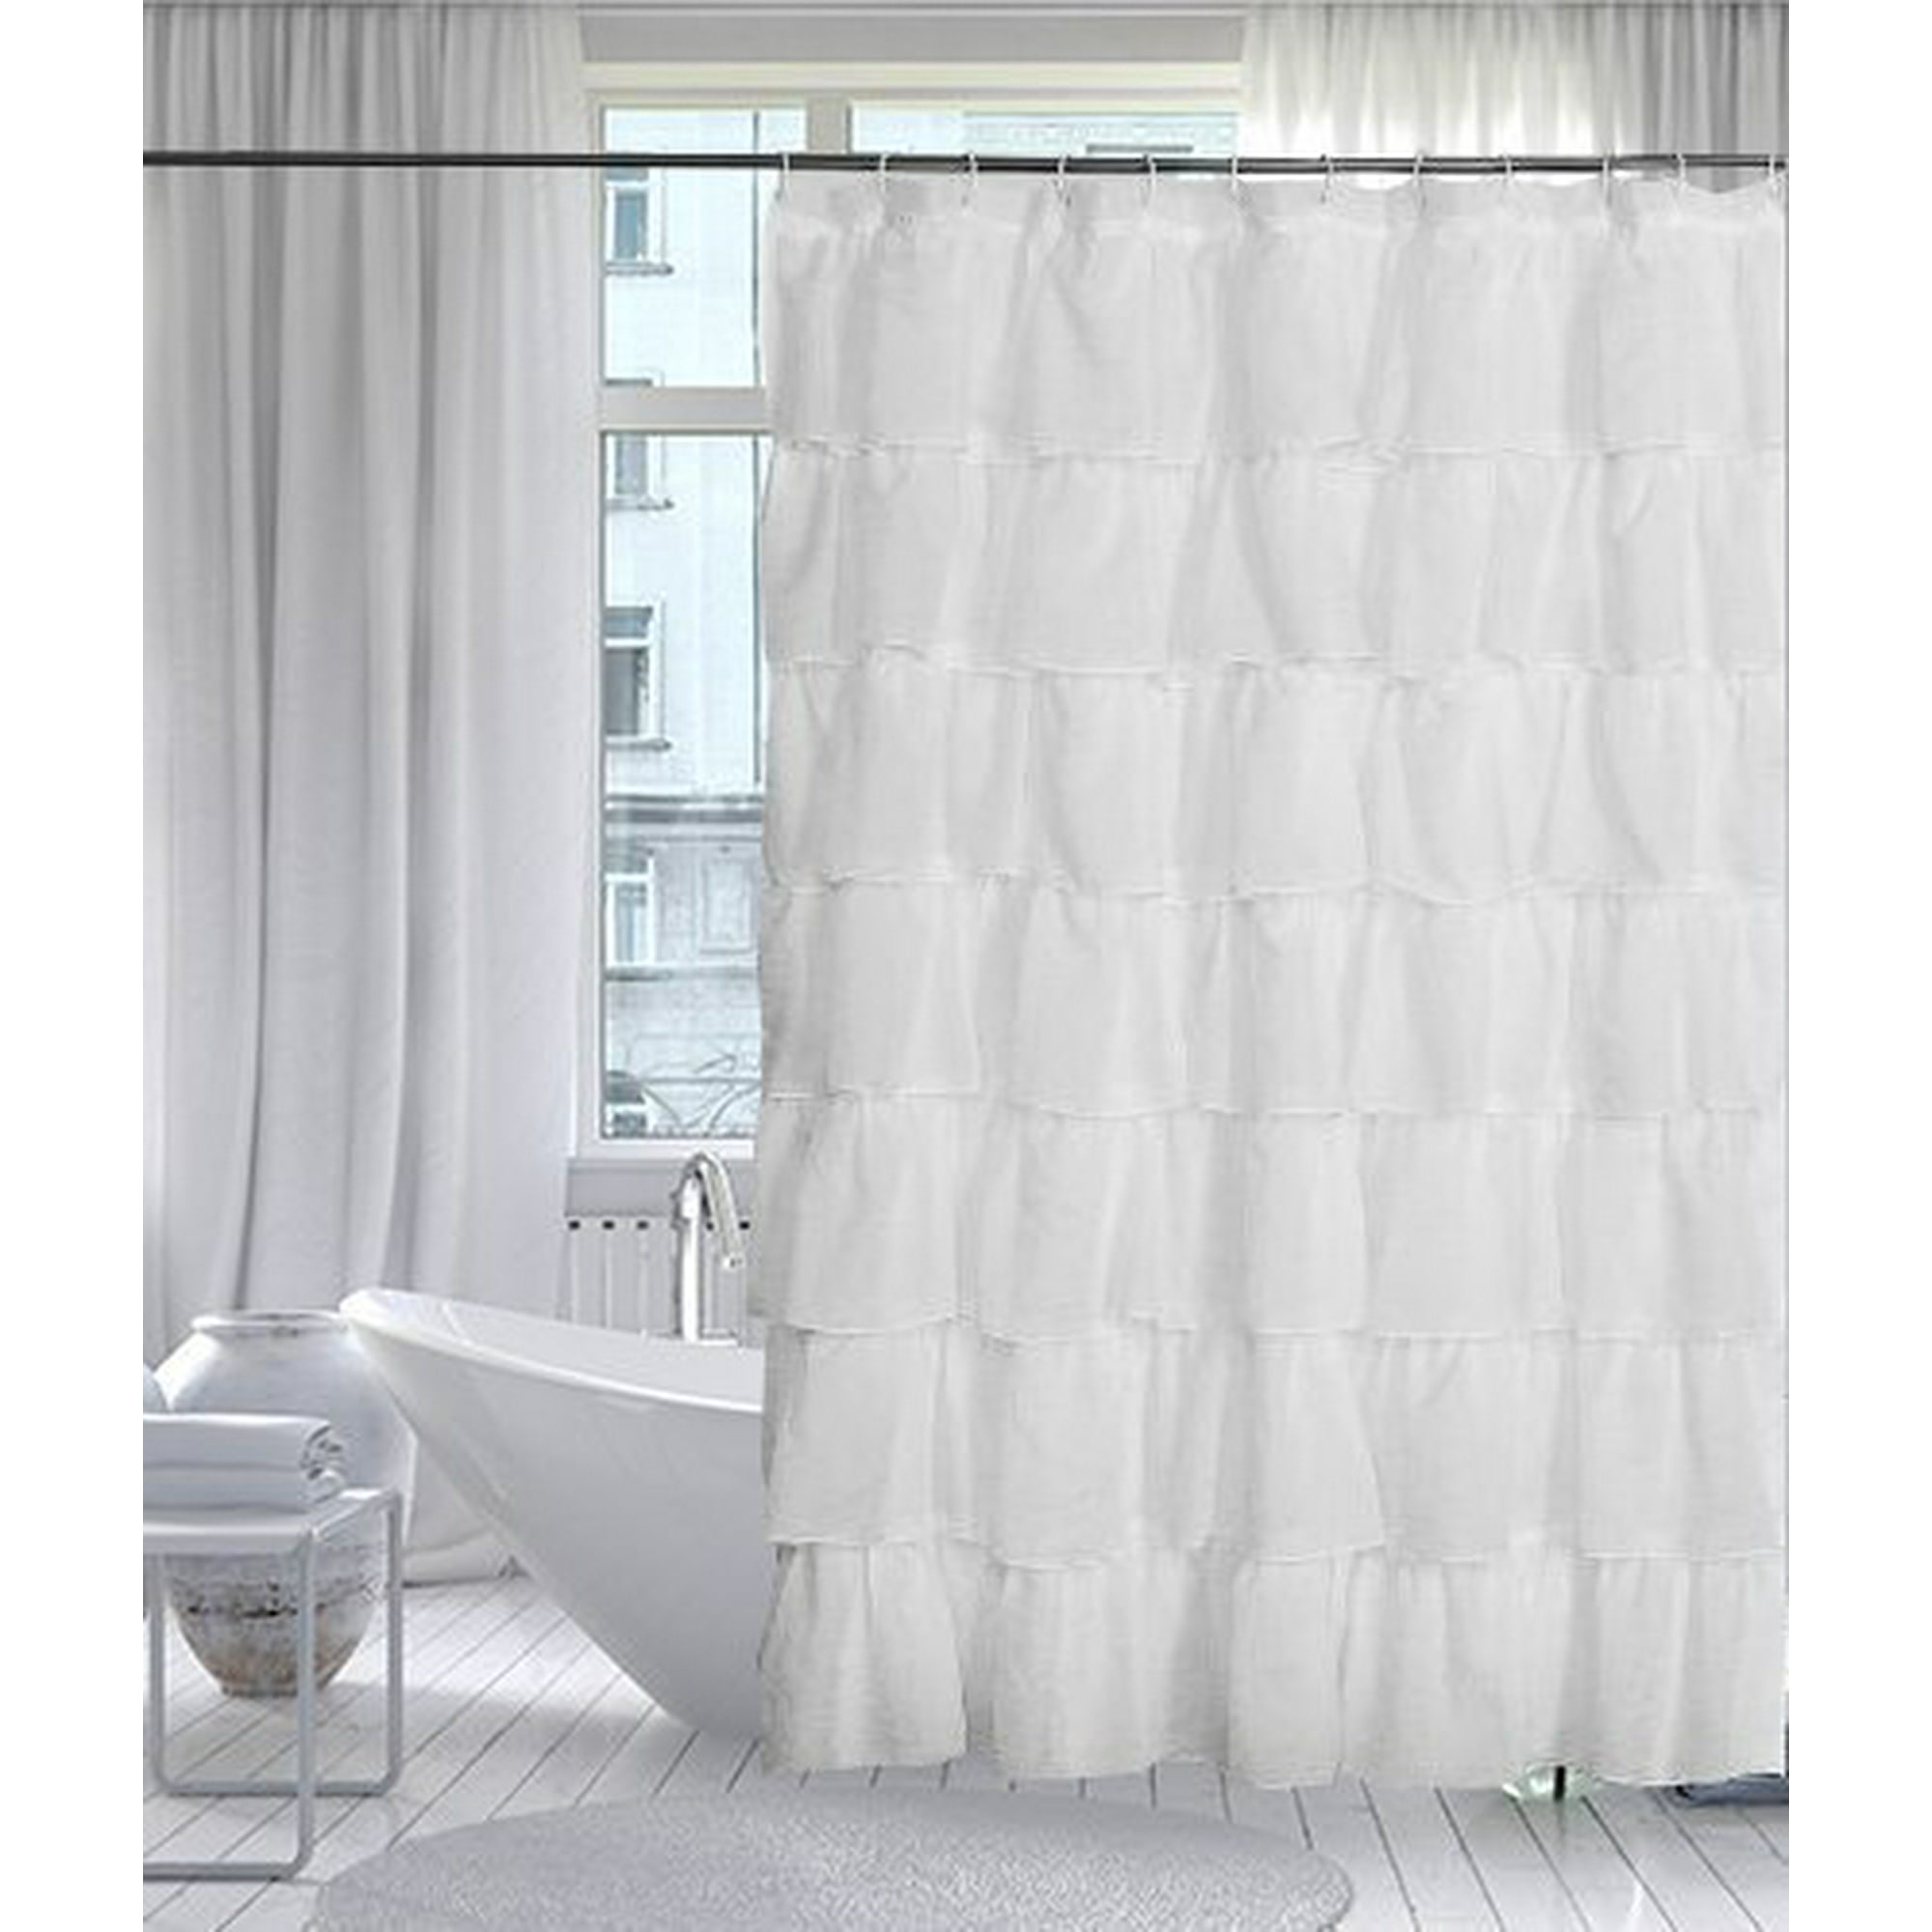 Goodgram White Ruffled Fabric Shower, Ruffled Fabric Shower Curtain